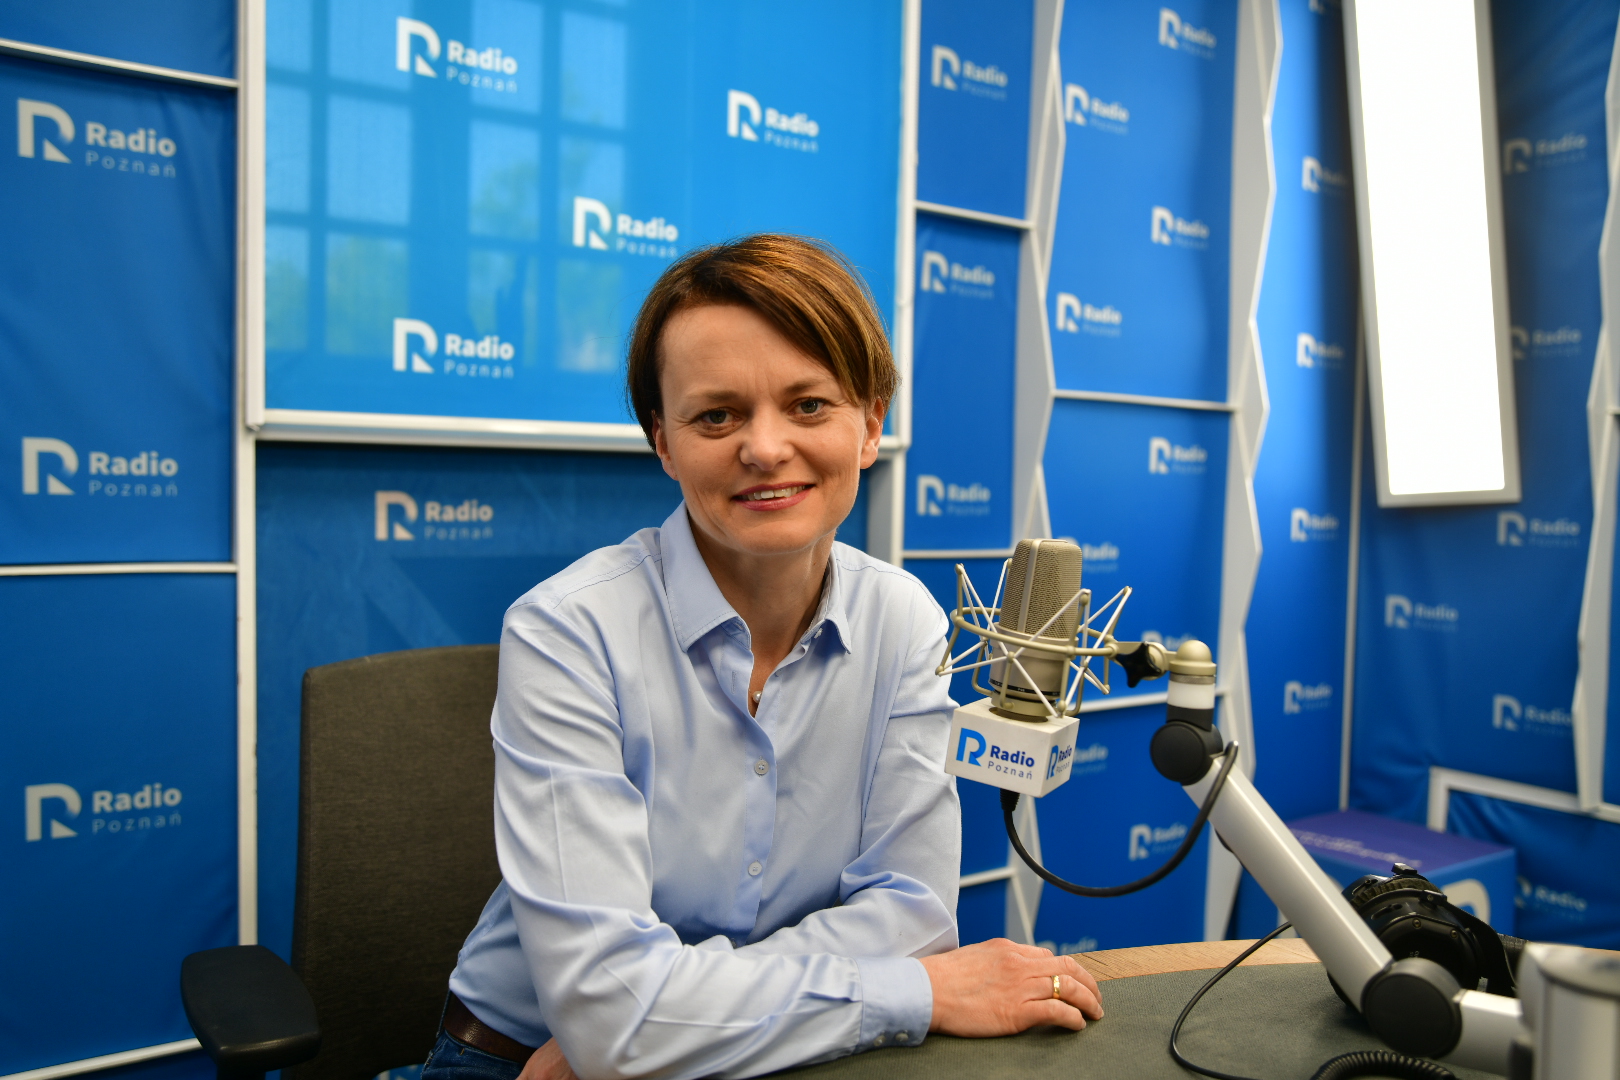 Jadwiga Emilewicz radio poznań - Wojtek Wardejn - Radio Poznań